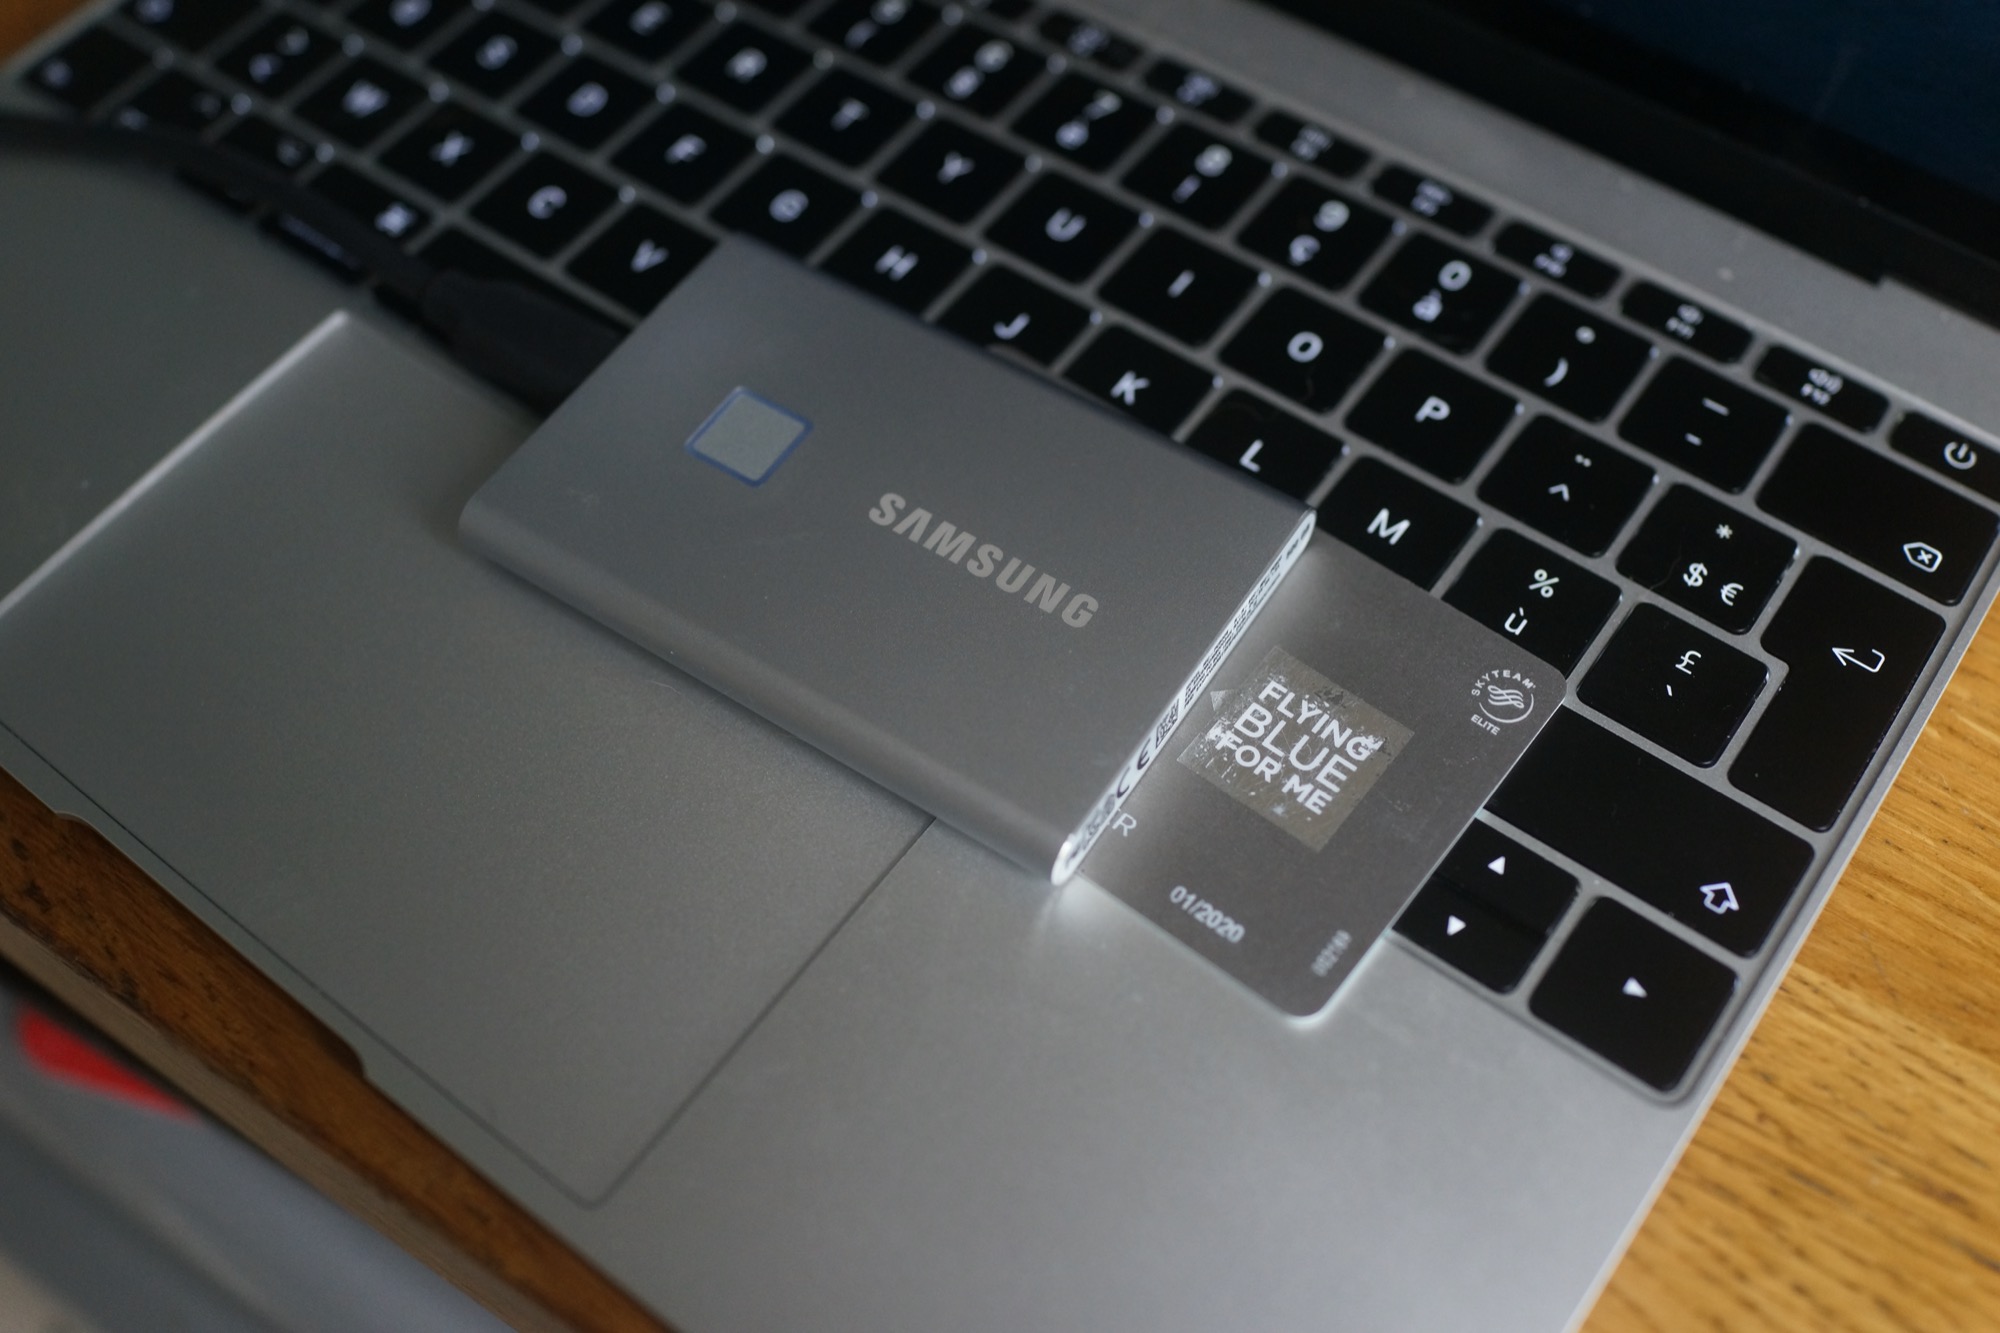 Samsung Disque dur SSD externe Portable 1To T7 Touch Noir pas cher